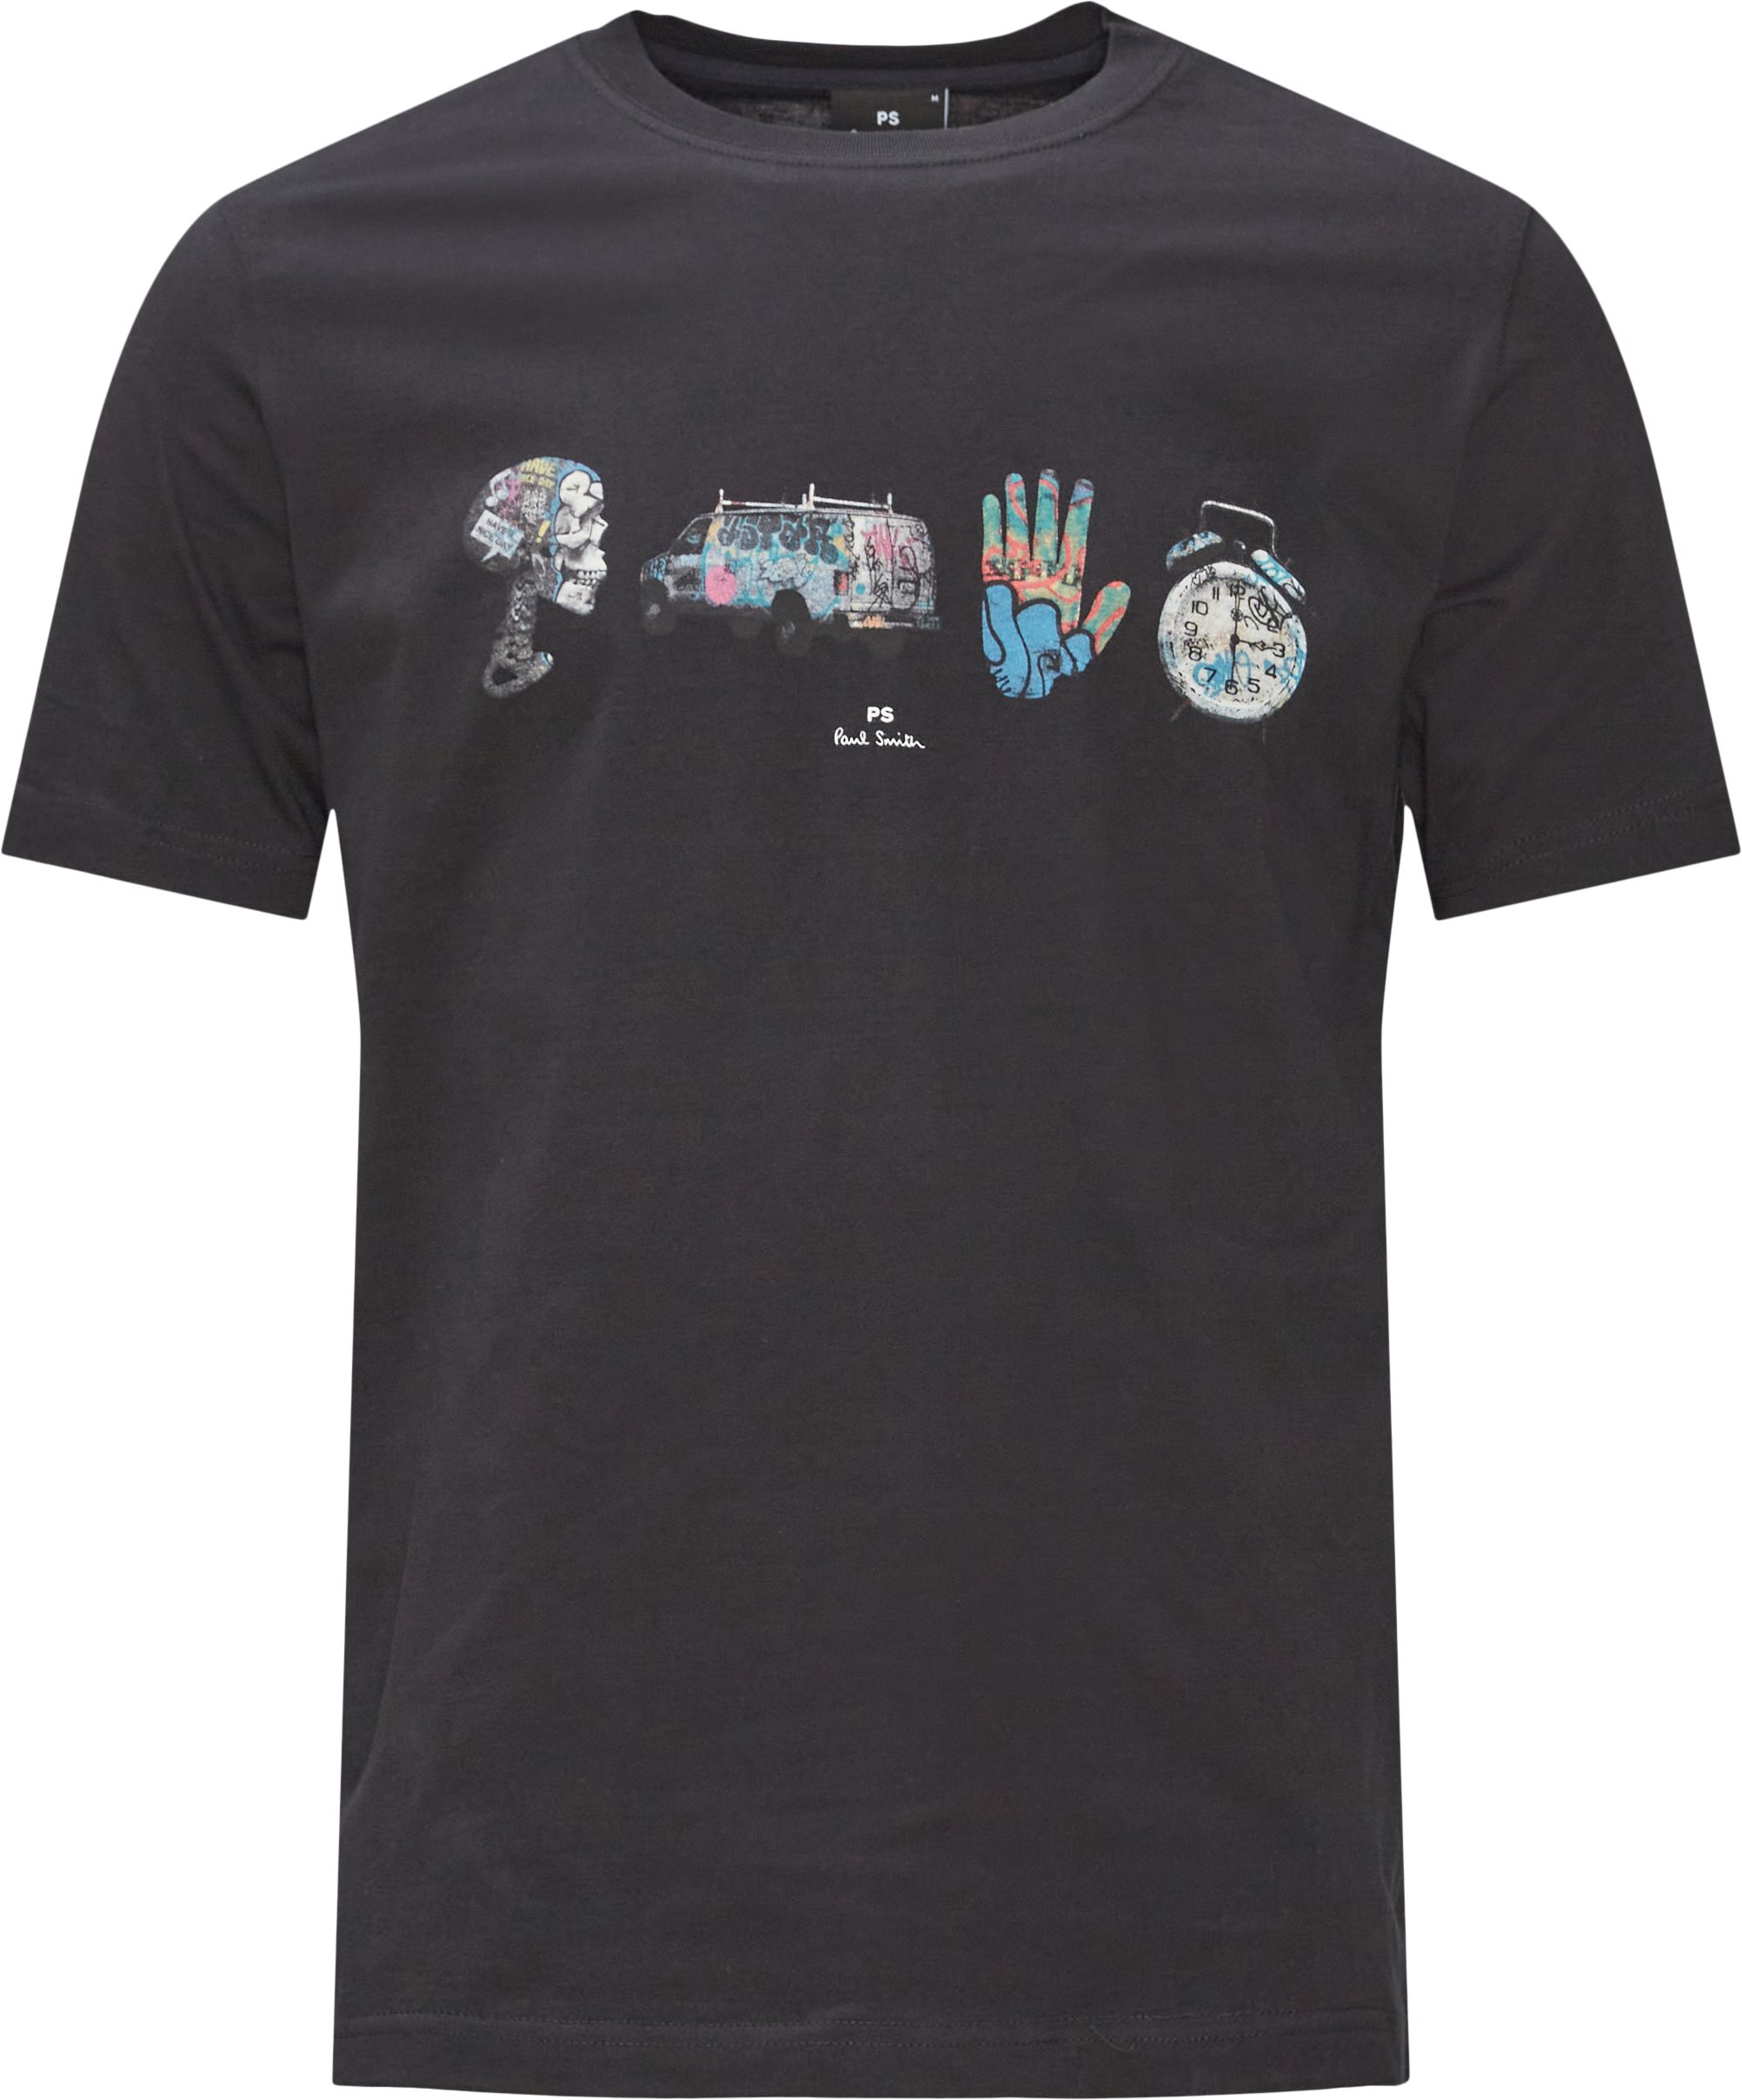 Graffiti Tee - T-shirts - Regular fit - Black